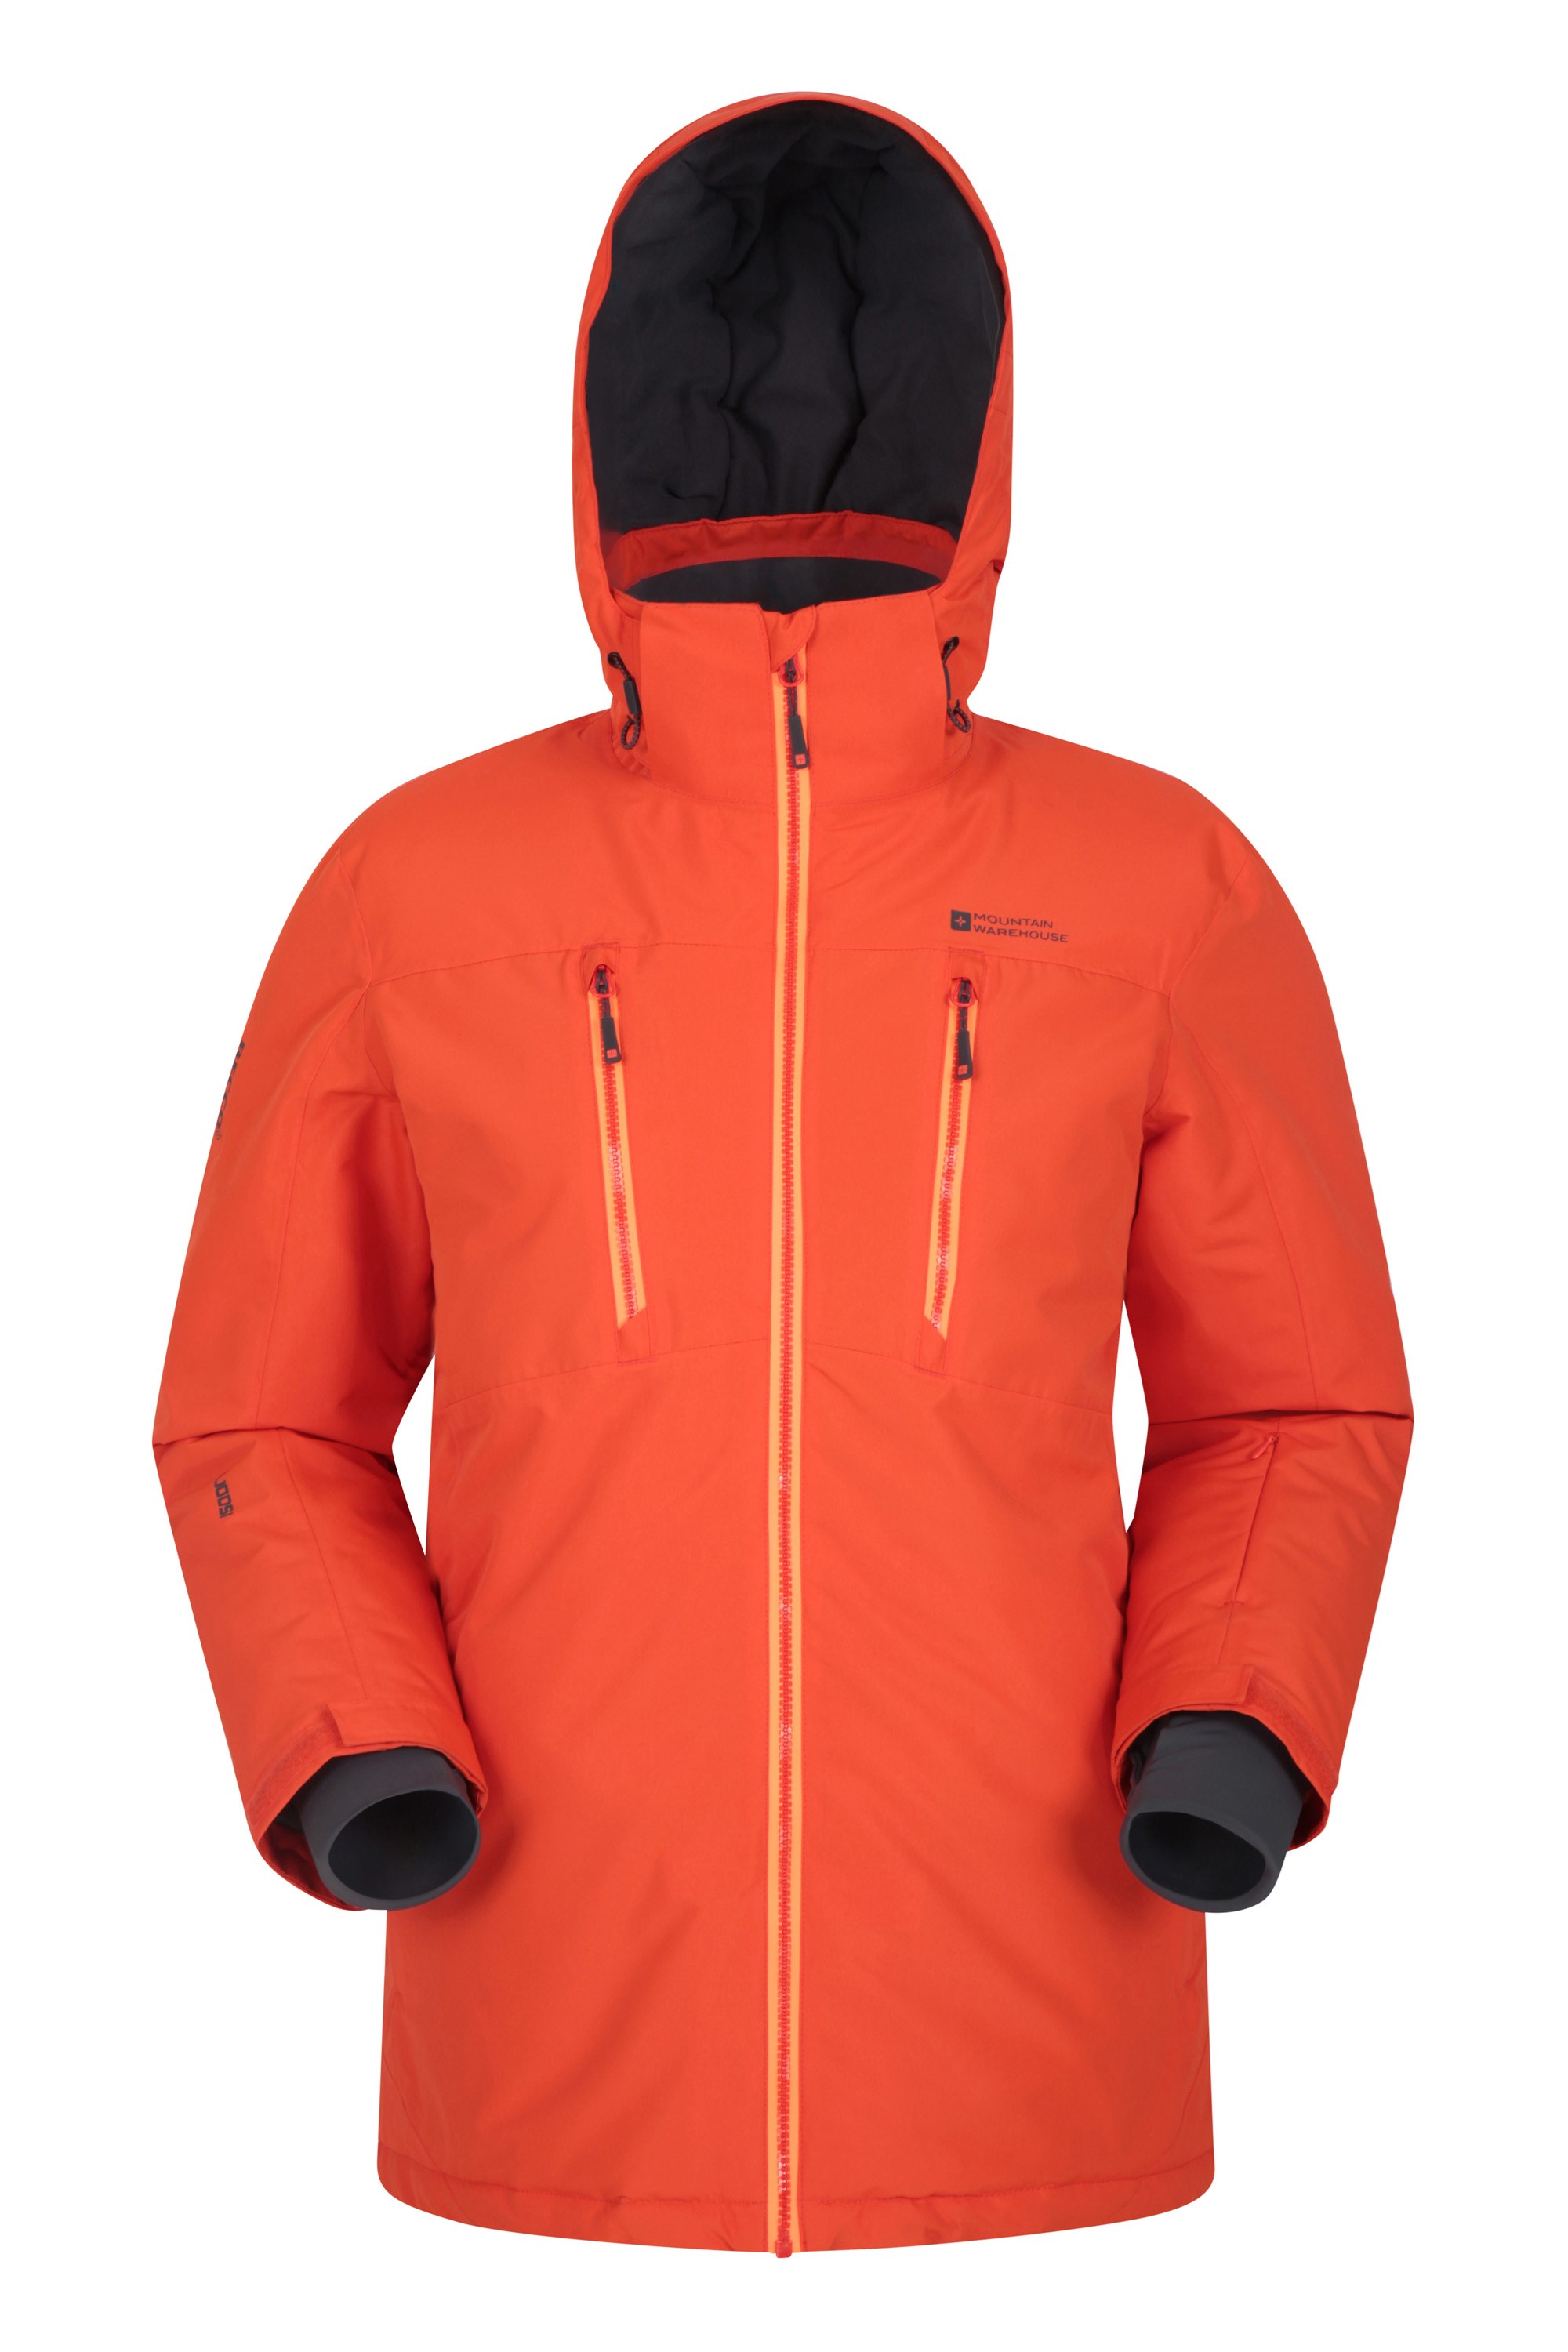 Mountain Warehouse Galaxy Mens Ski Jacket Orange